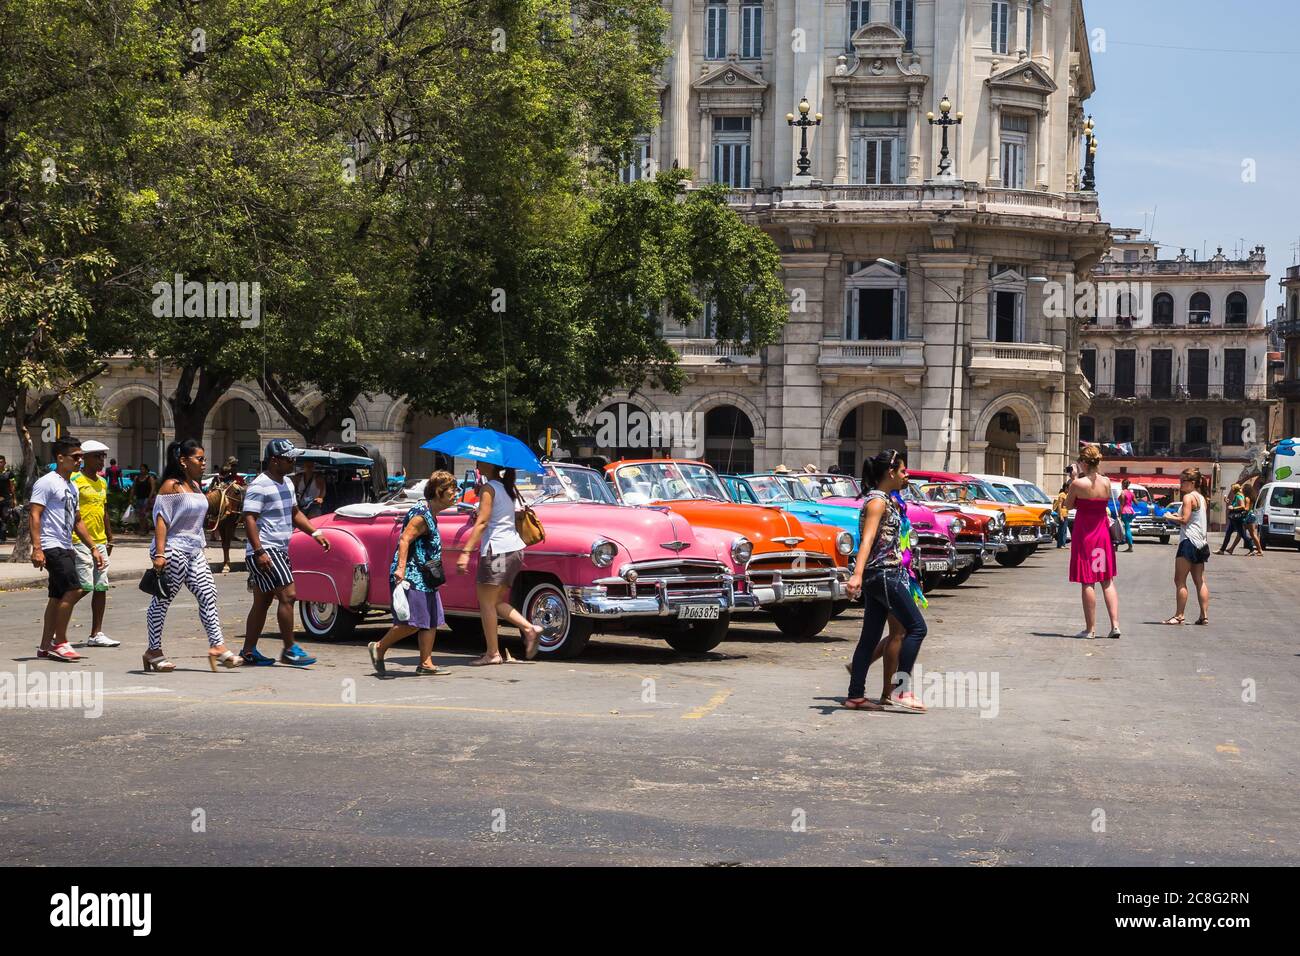 L'Avana / Cuba - 04.15.2015: Turisti e gente del posto camminano di fronte a colorate auto americane classiche che sono usate come taxi turistico a Cuba Foto Stock